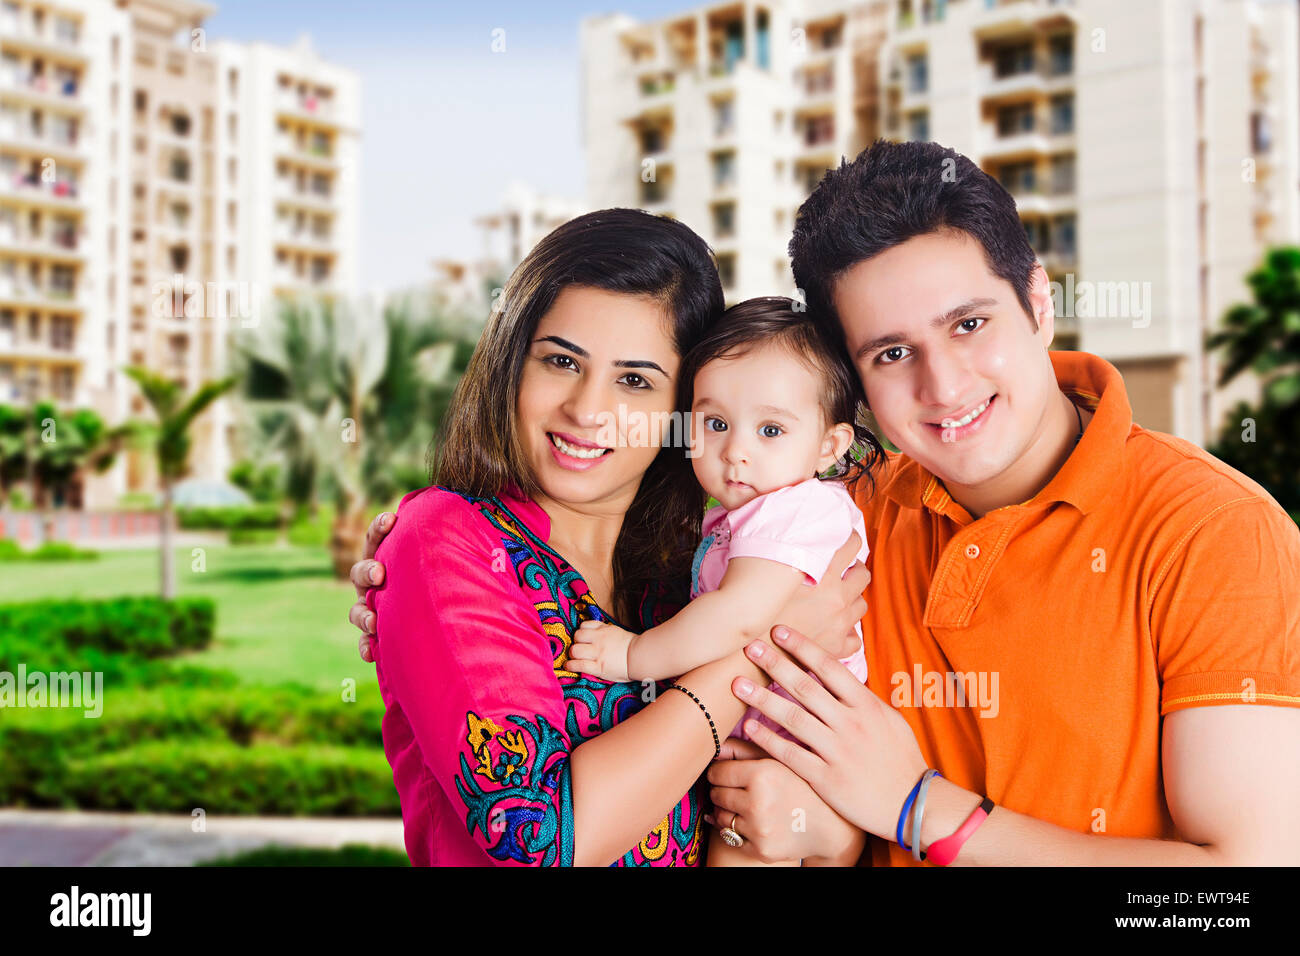 Indian i genitori e il bambino baby park godetevi Foto Stock